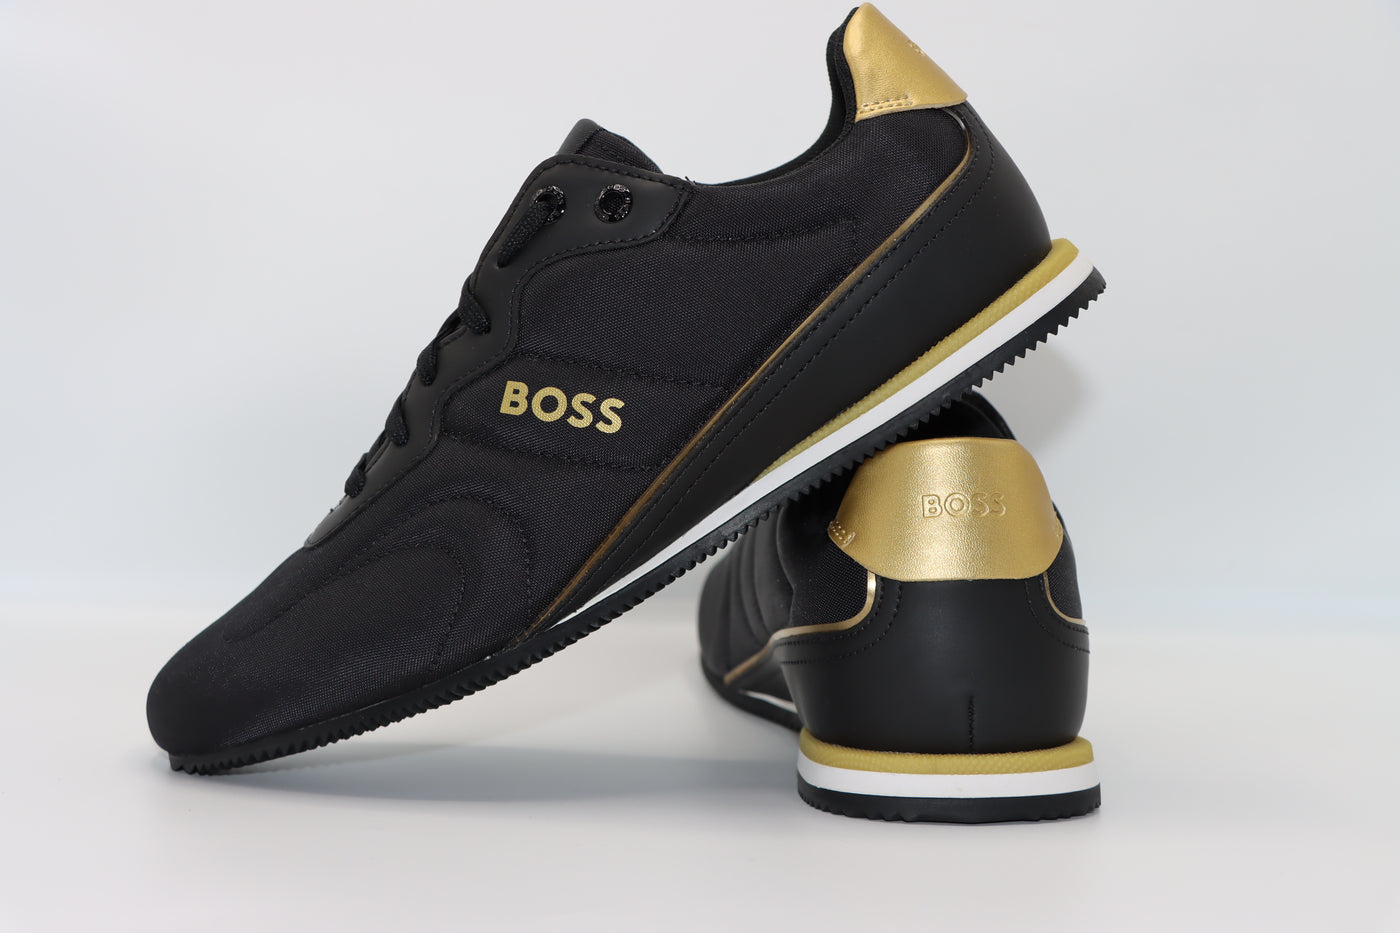 נעל בצבע שחור זהב HUGO BOSS